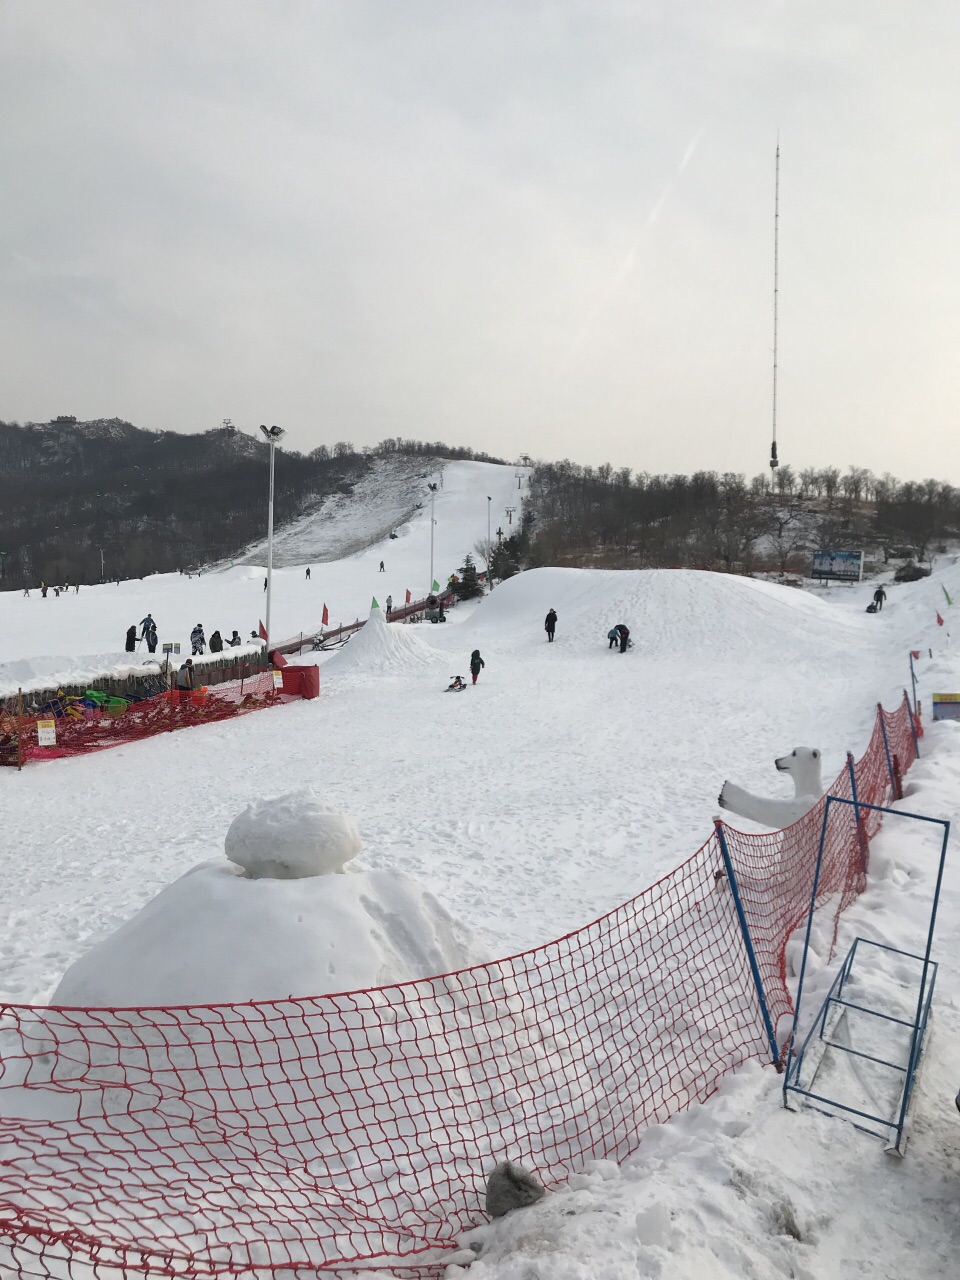 淄博的滑雪场图片